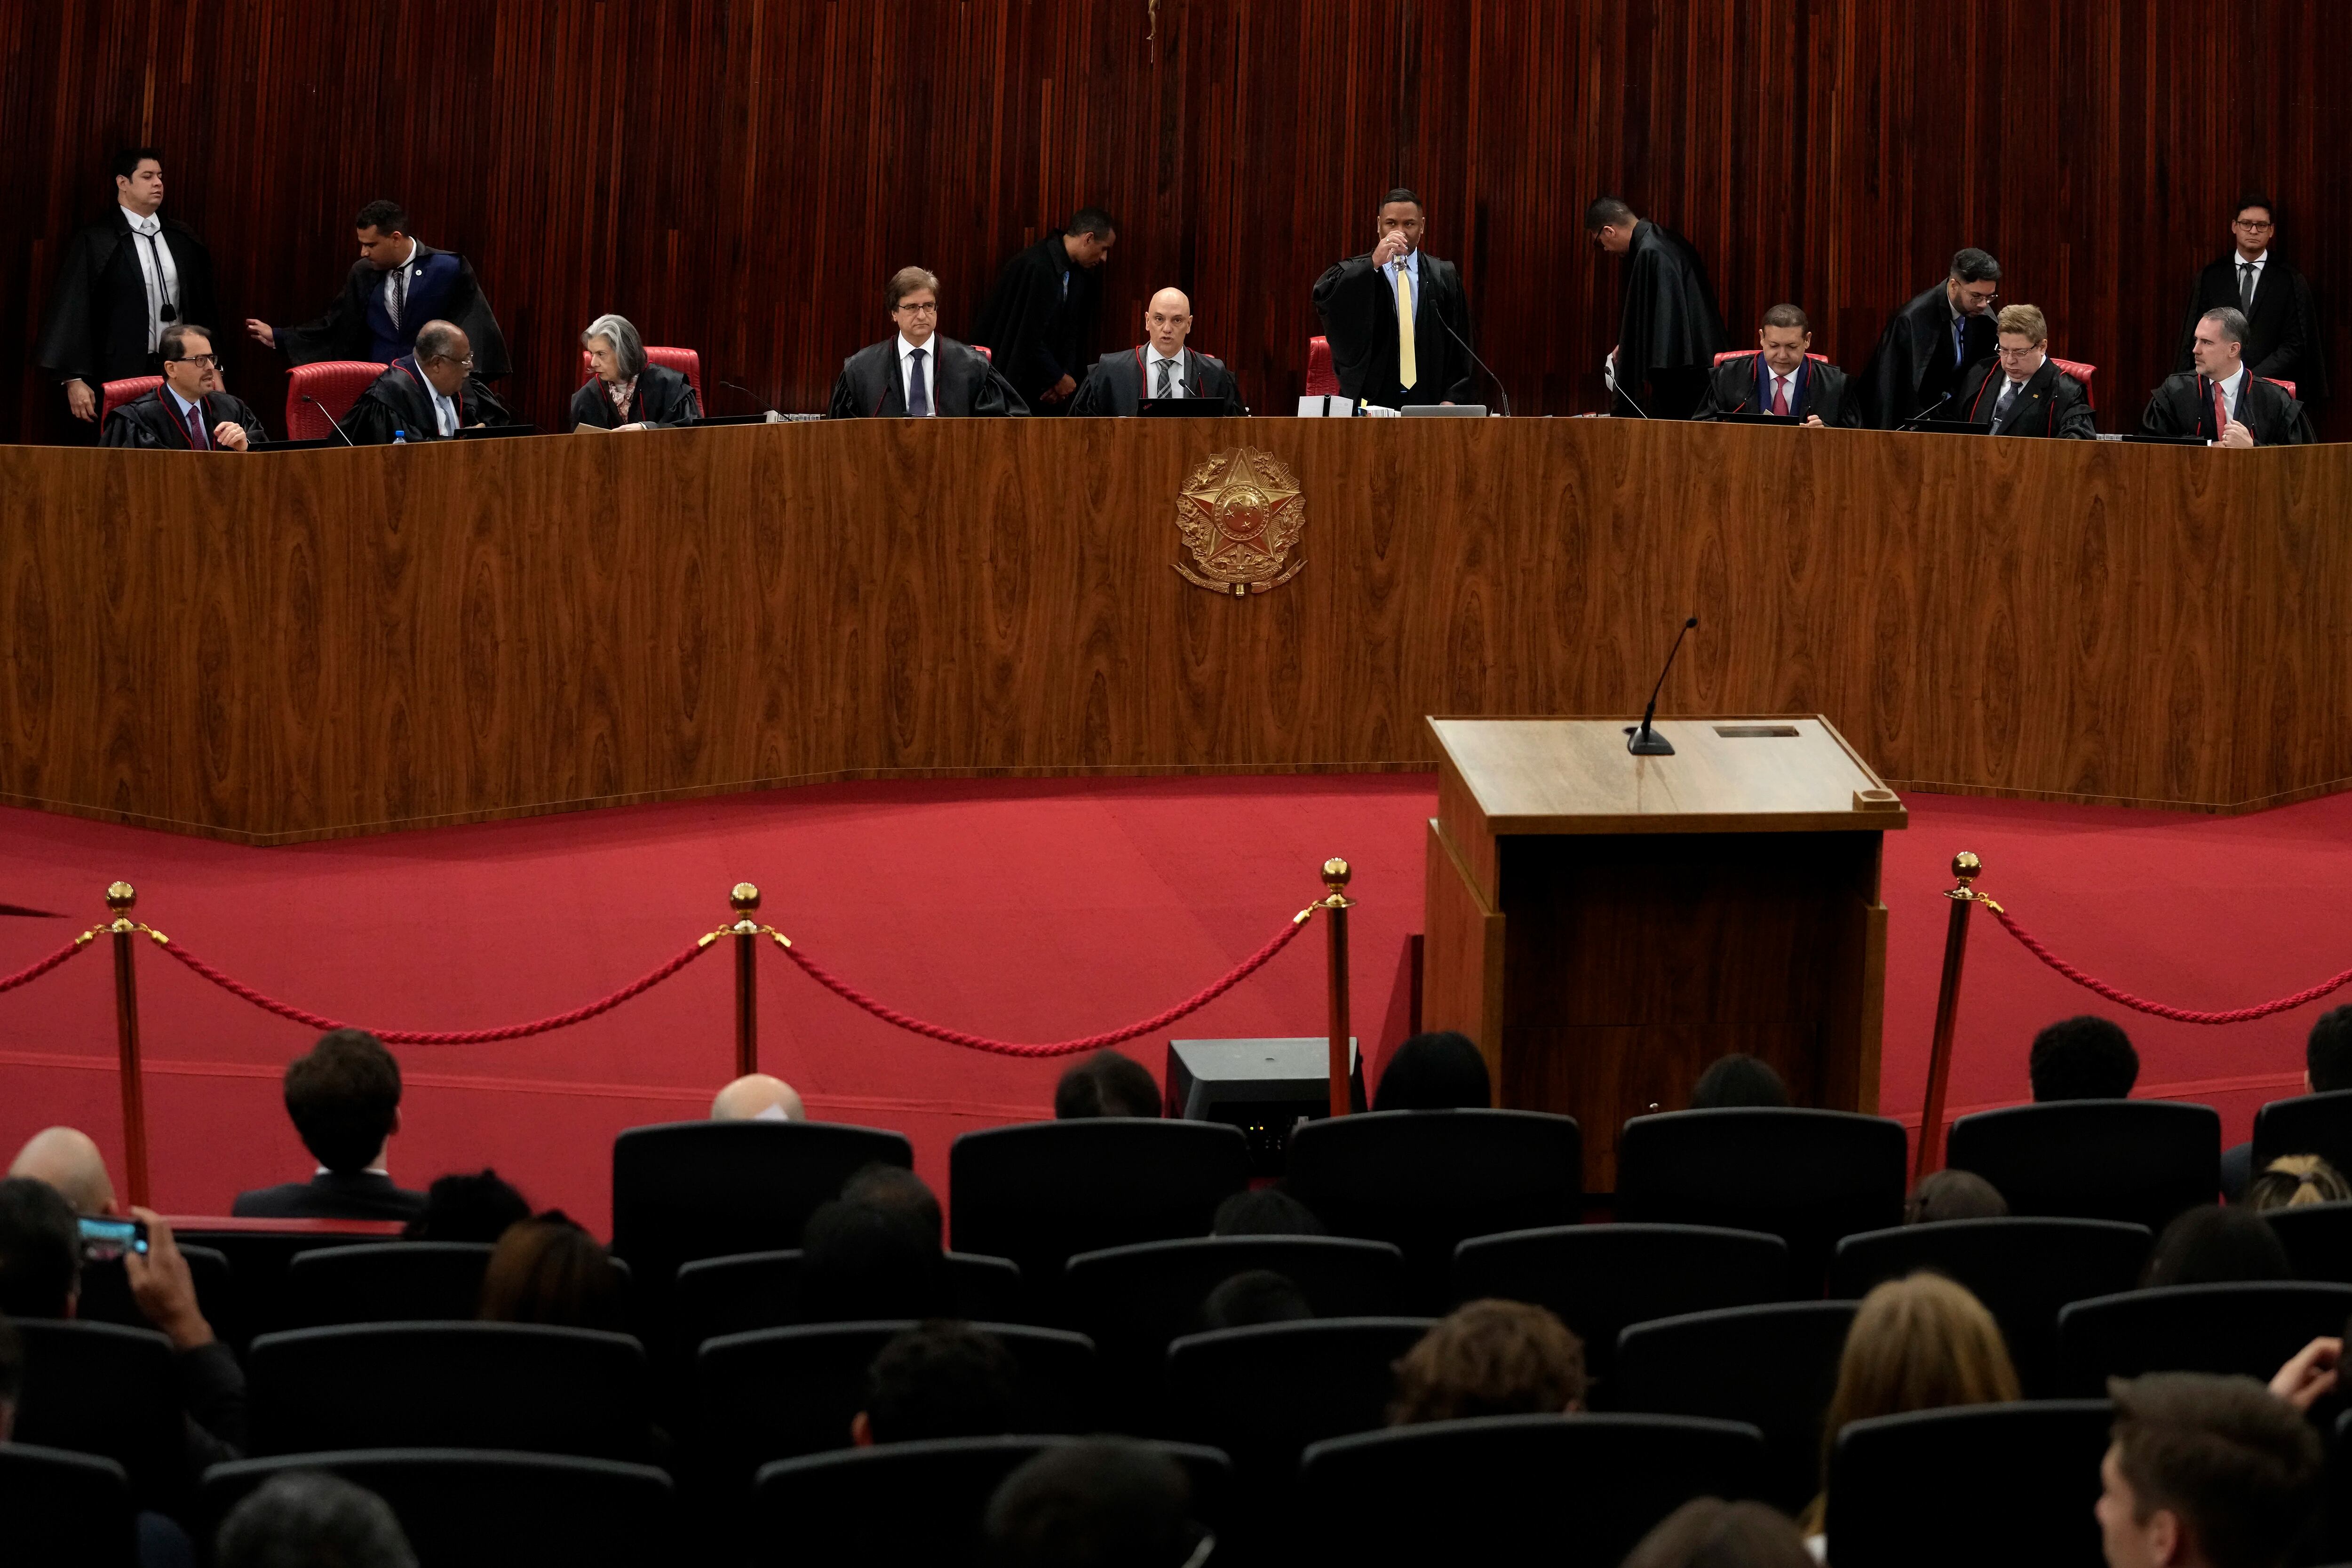 El ministro del Supremo Tribunal Electoral, Alexandre de Moraes, centro, preside el inicio del juicio al ex presidente Jair Bolsonaro en el Supremo Tribunal Federal, en Brasilia (AP Foto/Eraldo Peres)